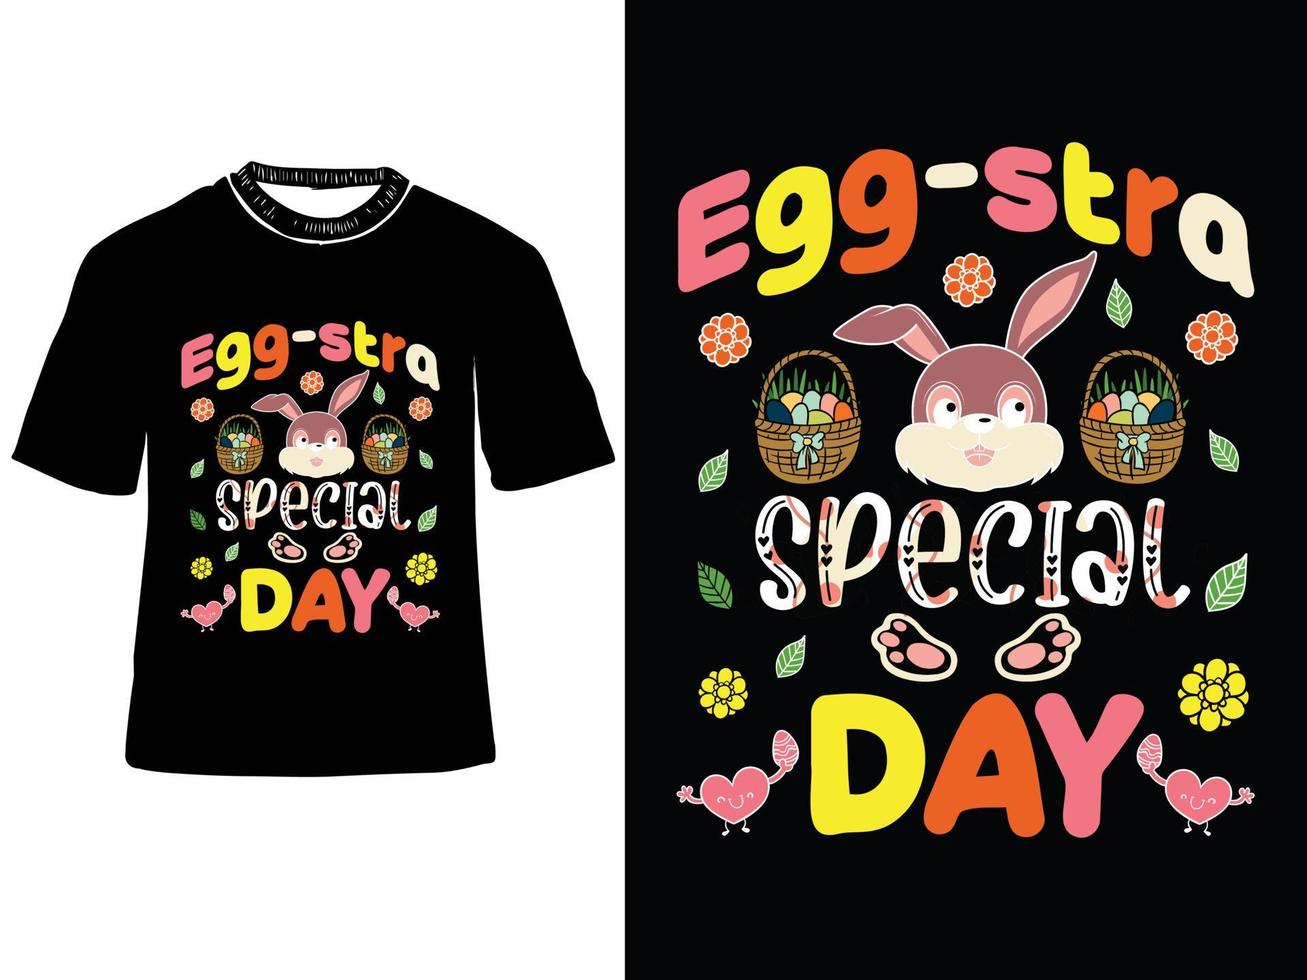 ei-stra speciaal dag, Pasen dag t shirt, hoppig Pasen t shirt, Pasen konijn t-shirt vector